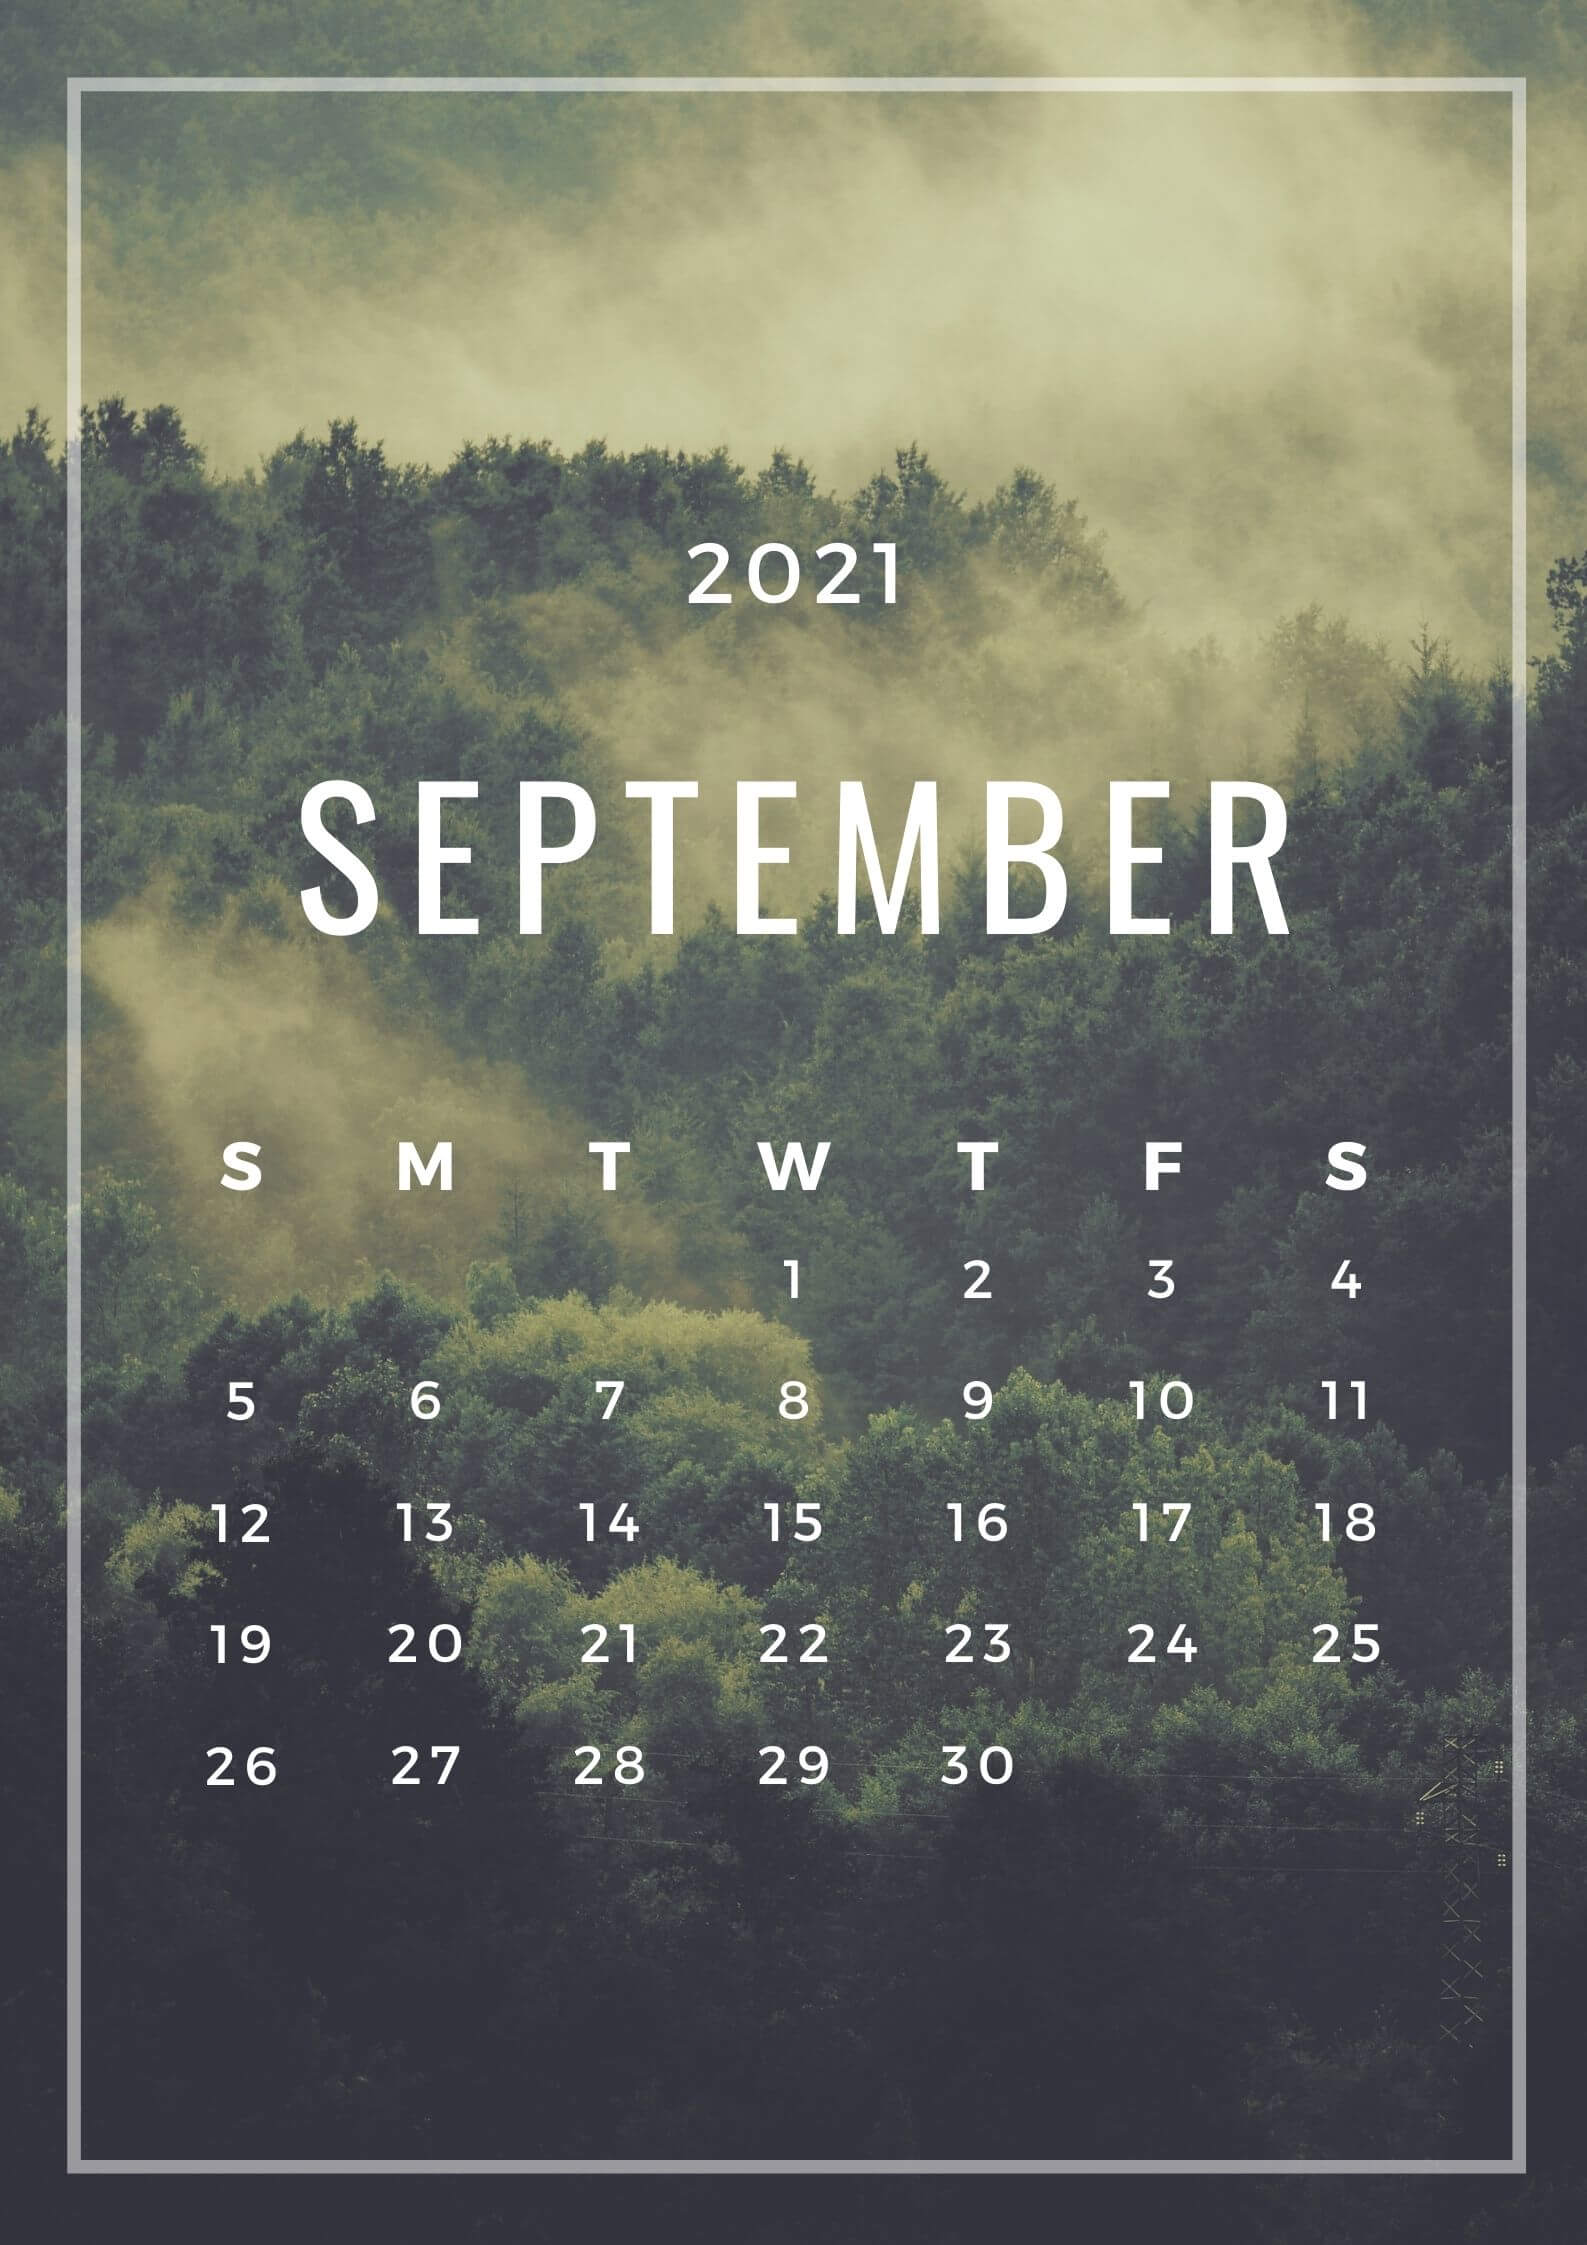 iPhone Calendar Wallpaper For September 2021